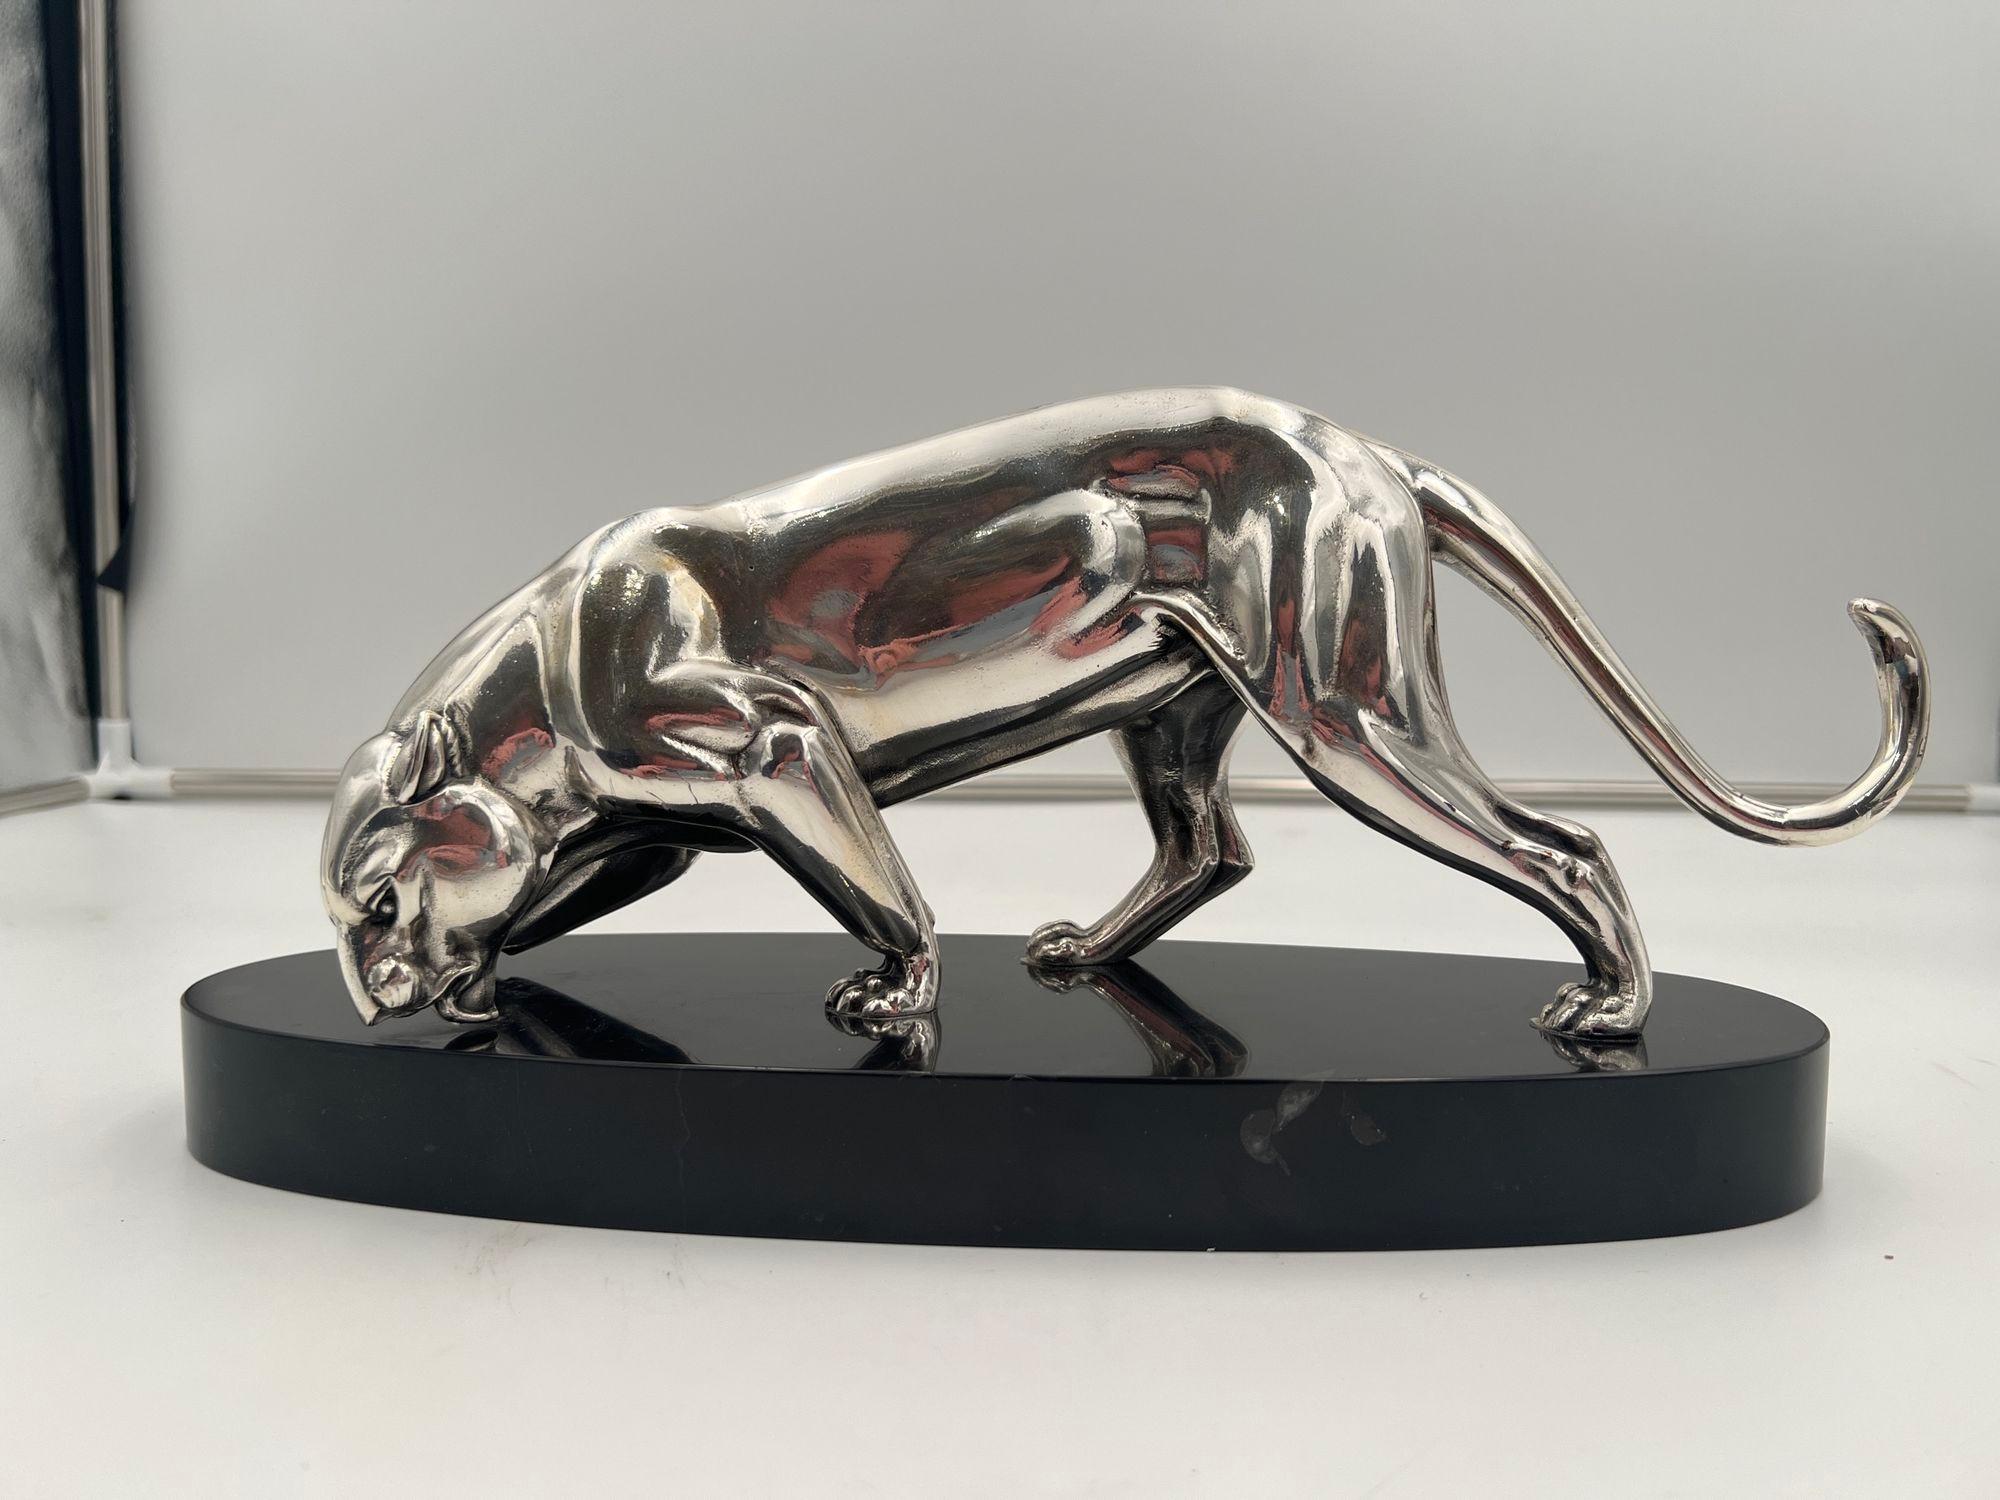 Schöne kleine Art-Déco-Panther-Skulptur aus Frankreich um 1930.
Versilberter Zinnguss. Steht auf einem ovalen Steinsockel.
Abmessungen: H 17 cm x B 34,5 cm x T 11 cm